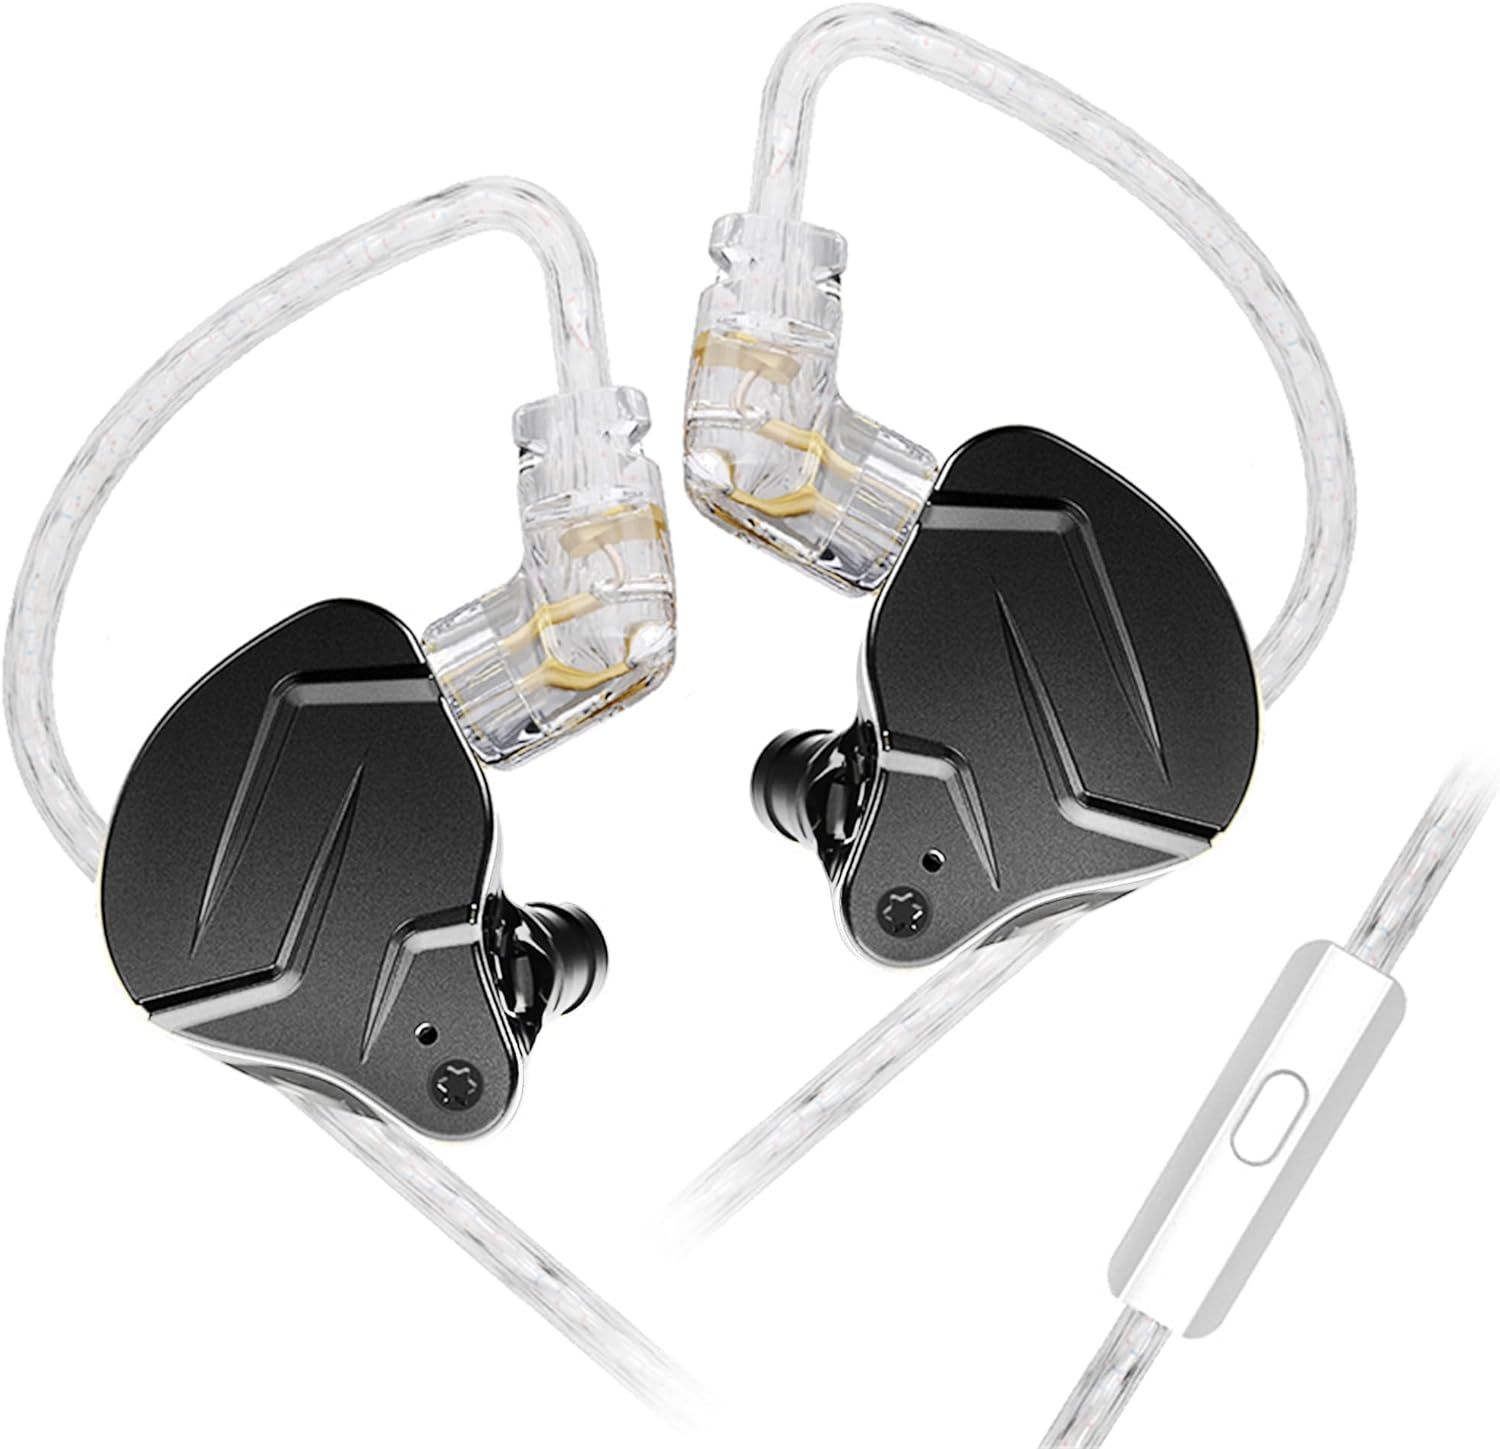 KZ ZSN Pro X in Ear Monitors